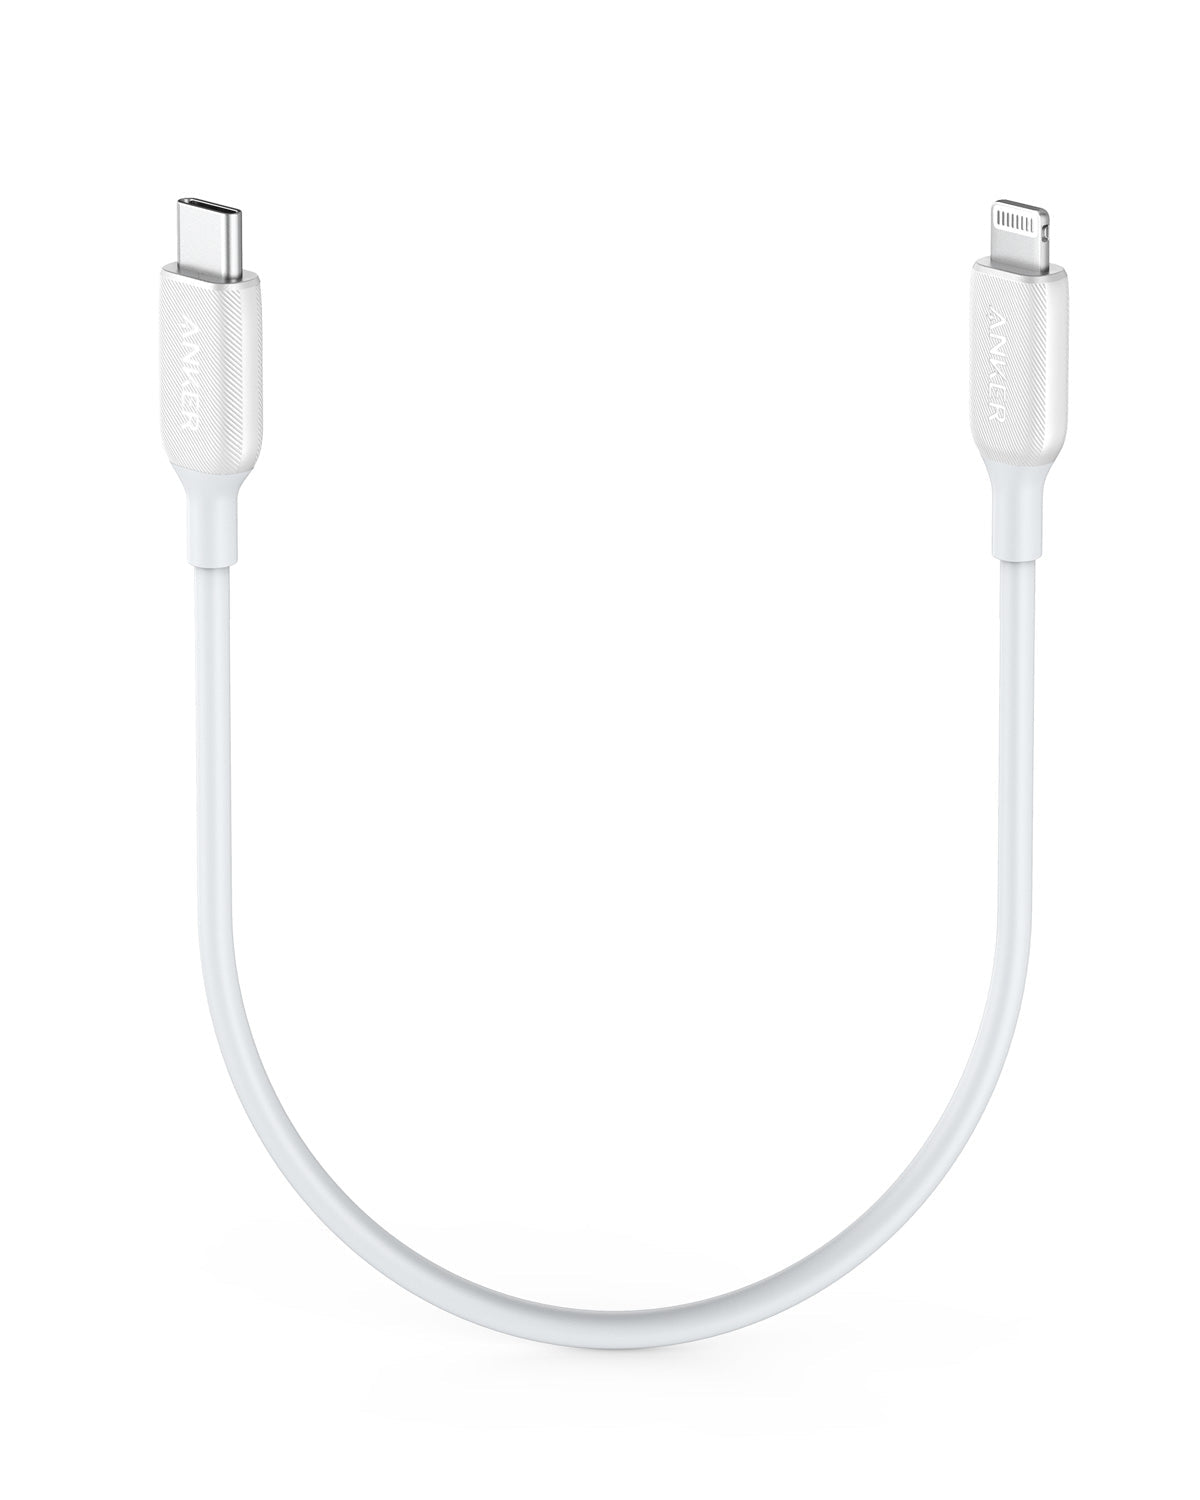 Anker <b>541</b> USB-C to Lightning Cable( 1ft / 3ft / 6ft )